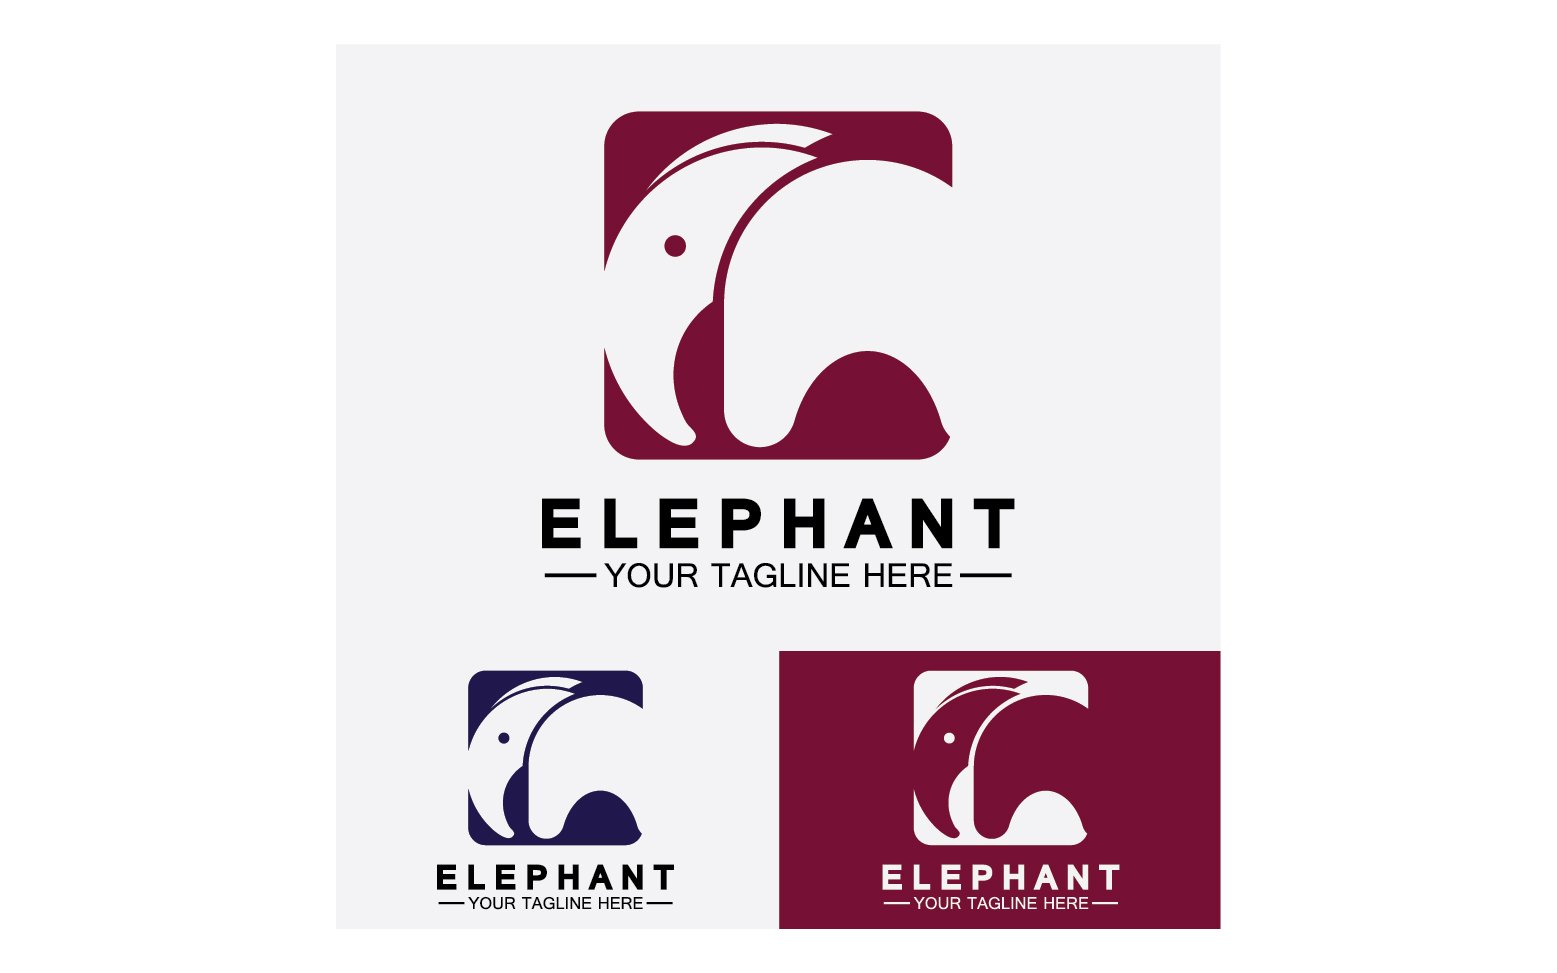 Kit Graphique #355976 Animal lphant Divers Modles Web - Logo template Preview